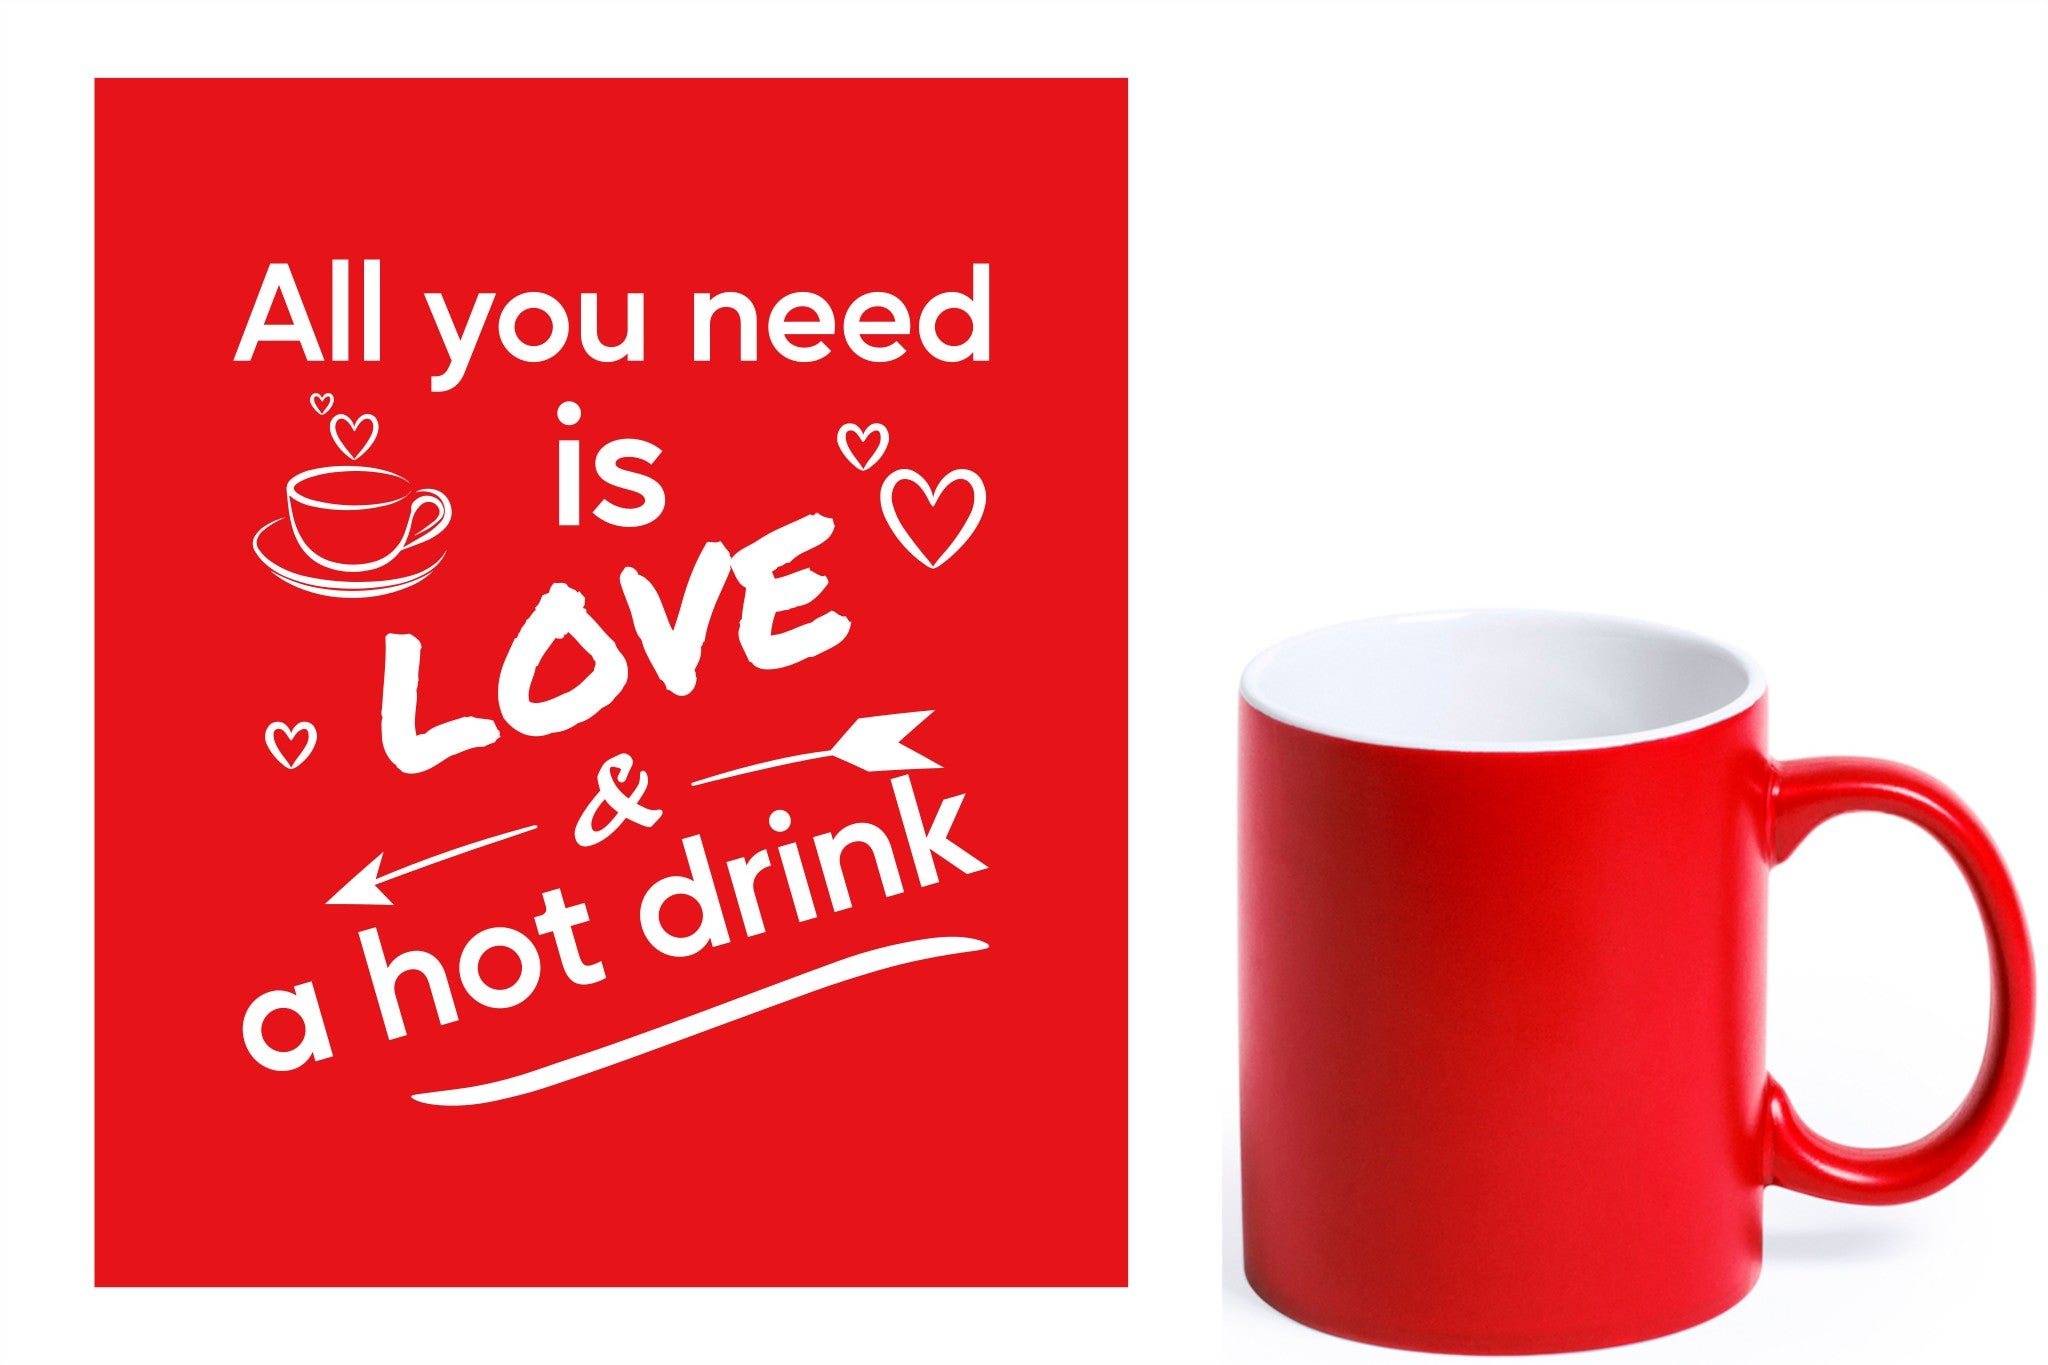 rode keramische mok met witte gravure  'All you need is love & a hot drink'.